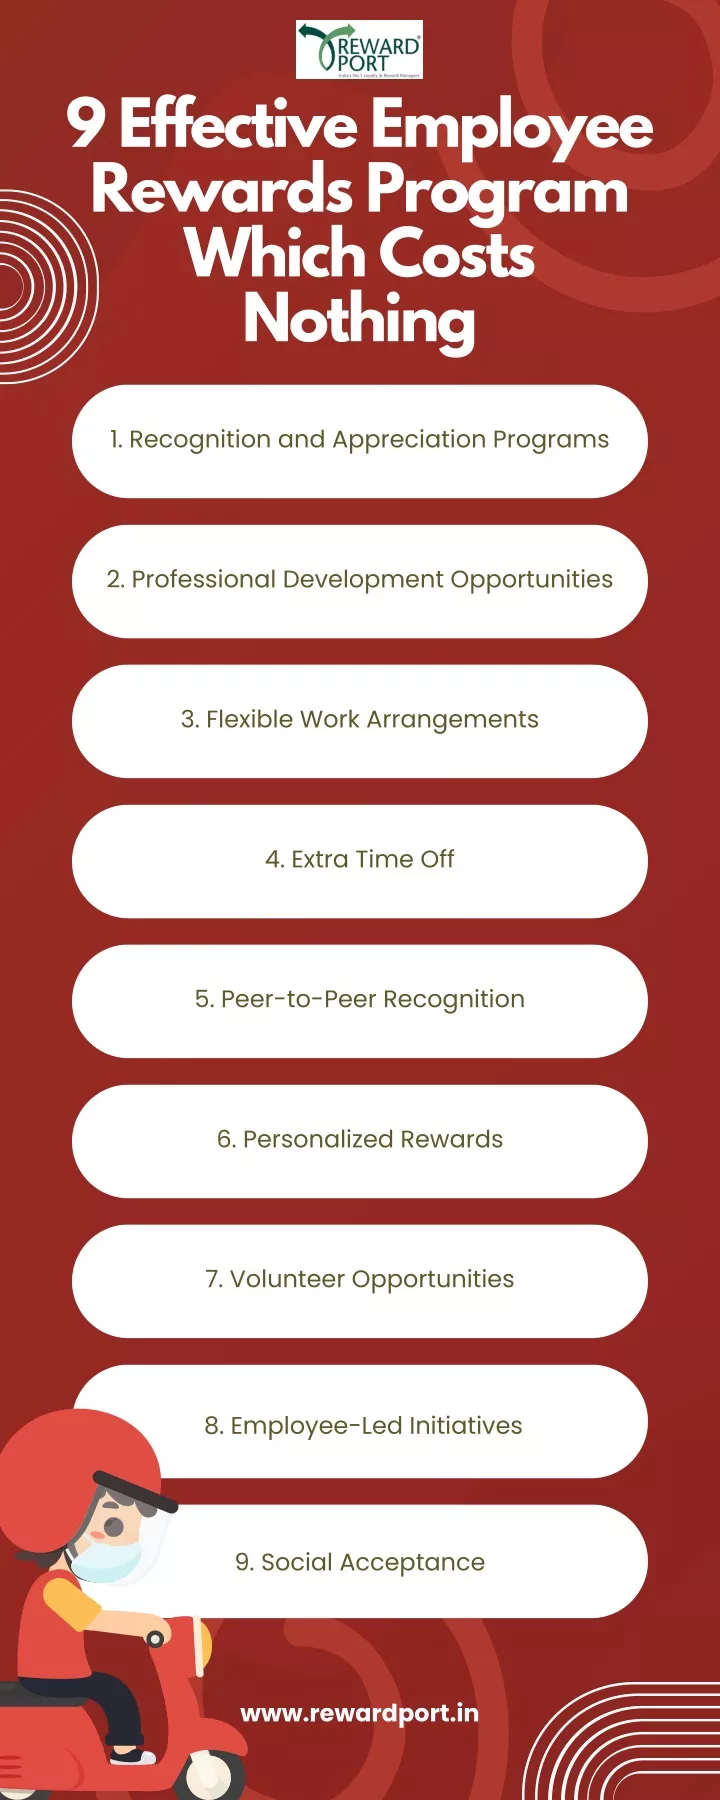 9 effective employee rewards program which costs